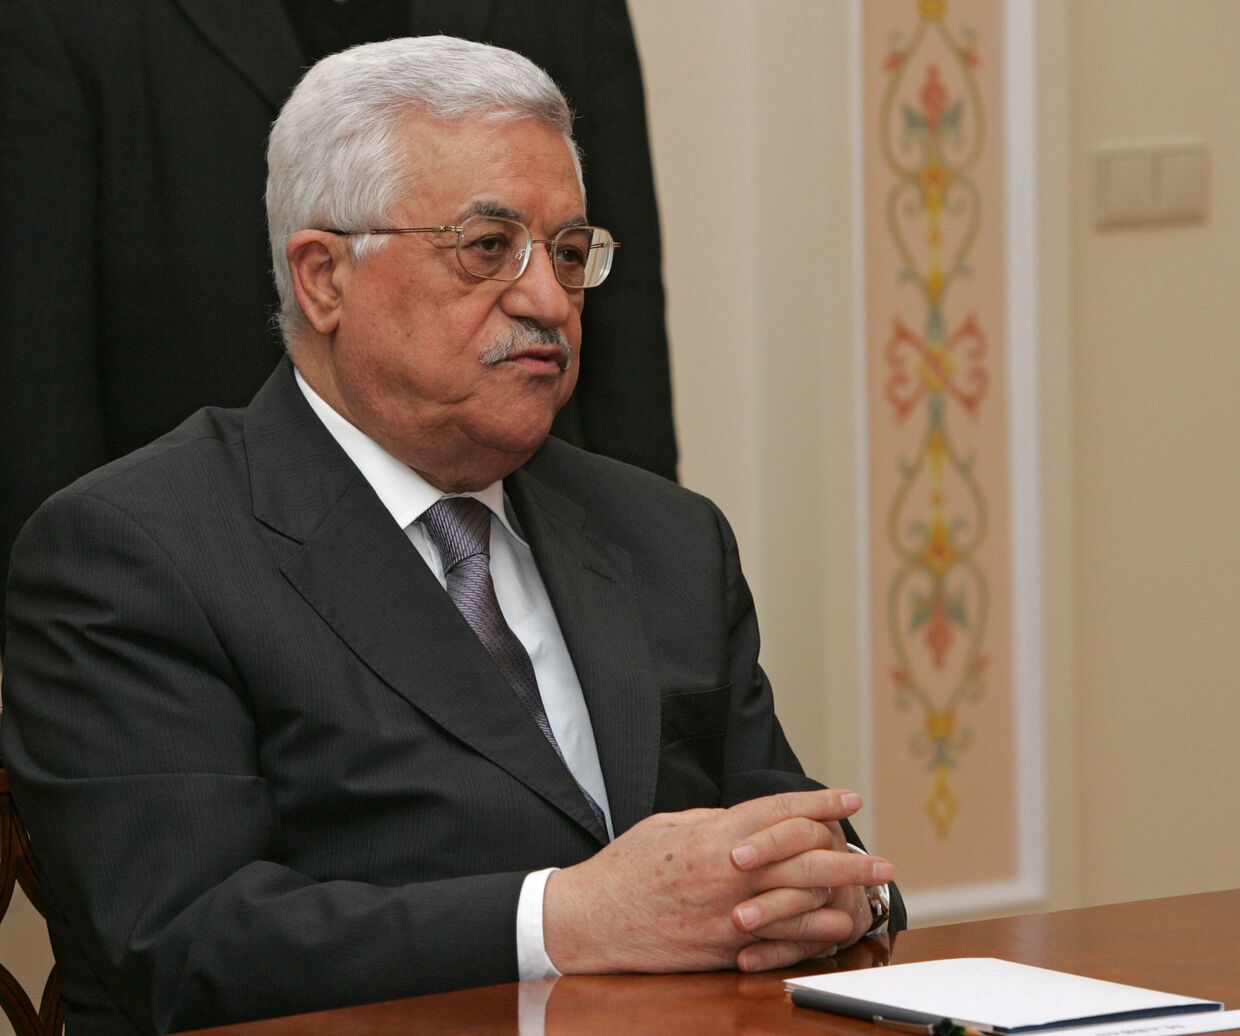 Глава палестинской администрации Махмуд Аббас